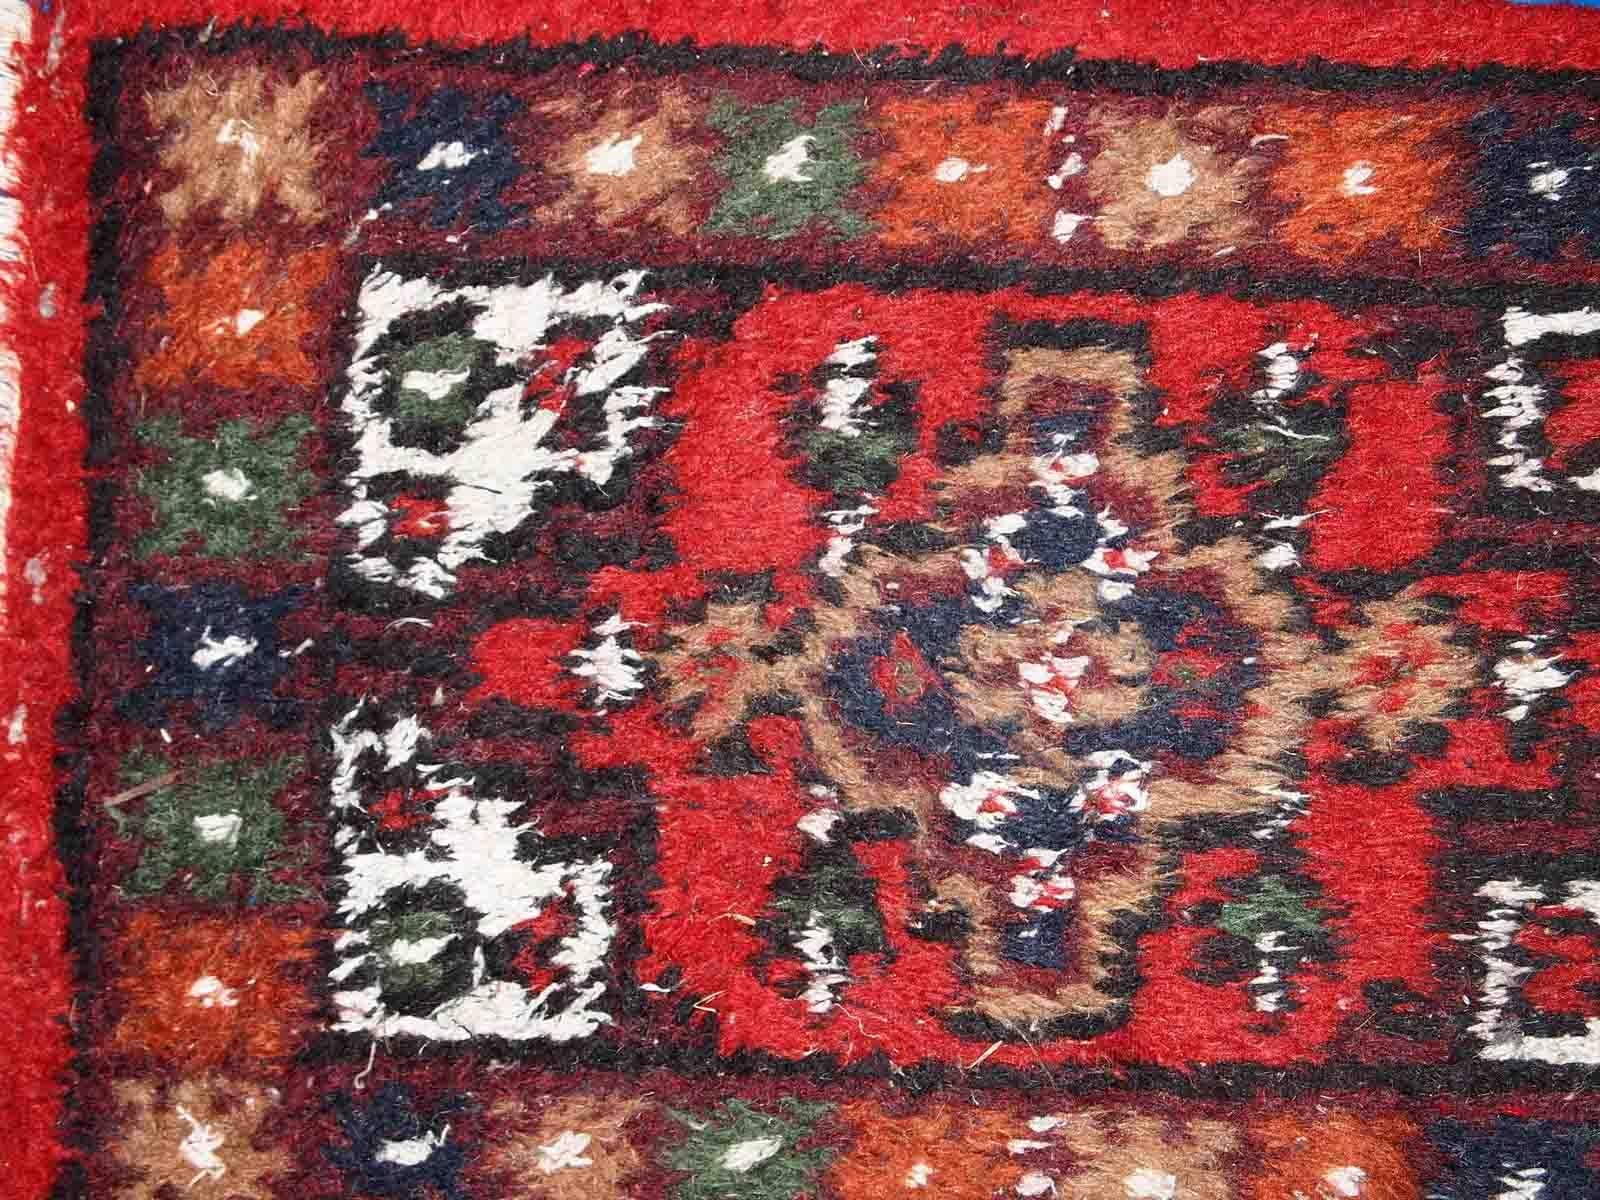 Handgefertigte Matte aus dem Nahen Osten in gutem Originalzustand. Der Teppich stammt aus dem Ende des 20. Jahrhunderts.

-zustand: original gut, 

-etwa: 1970er Jahre,

-größe: 1,3' x 1,9' (41cm x 59cm),

-material: